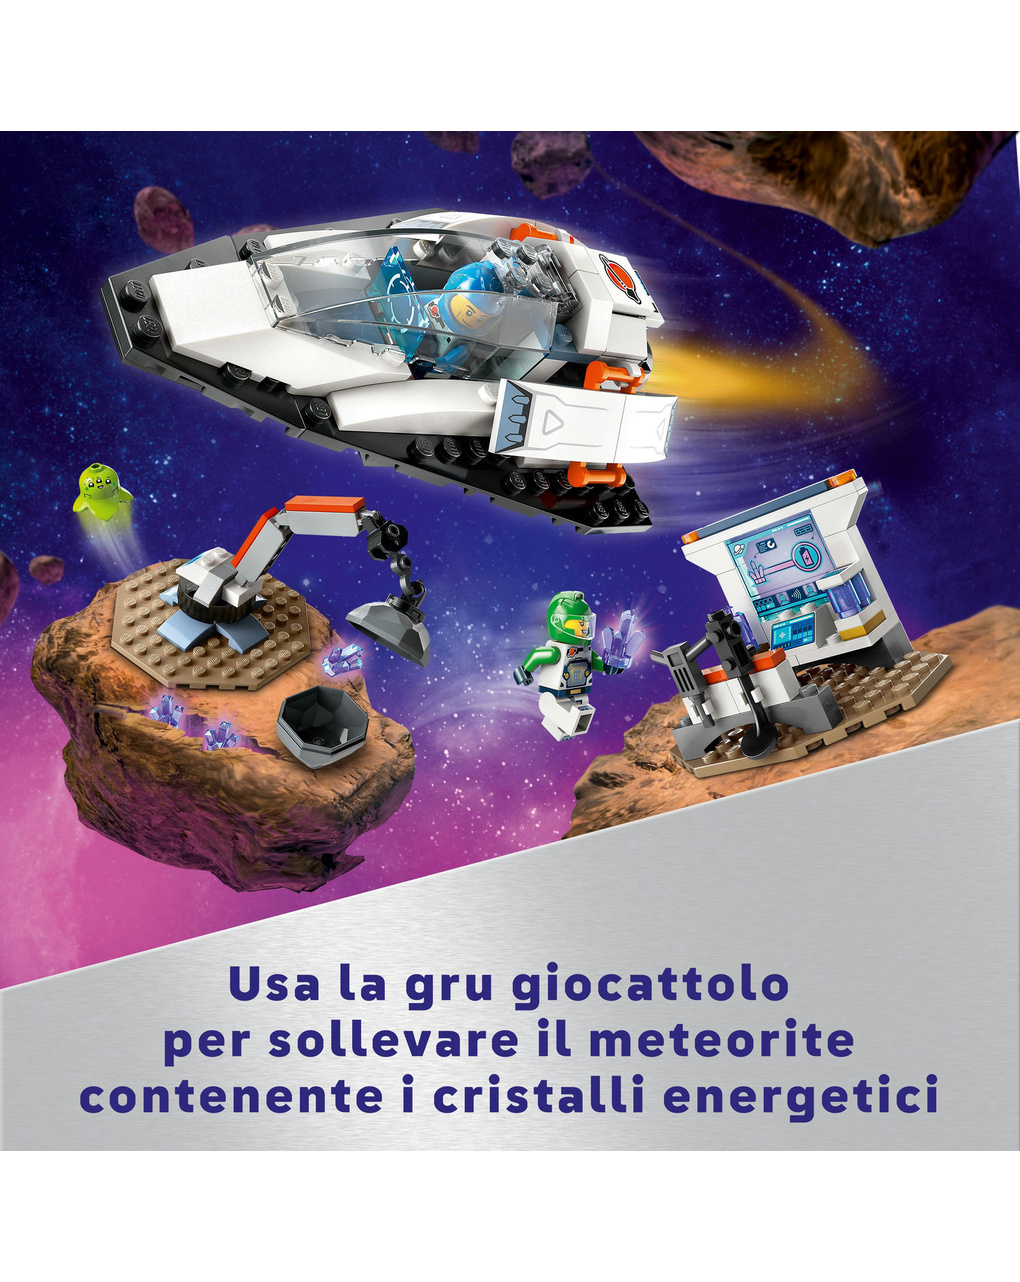 El transbordador espacial y el descubrimiento de asteroides - LEGO